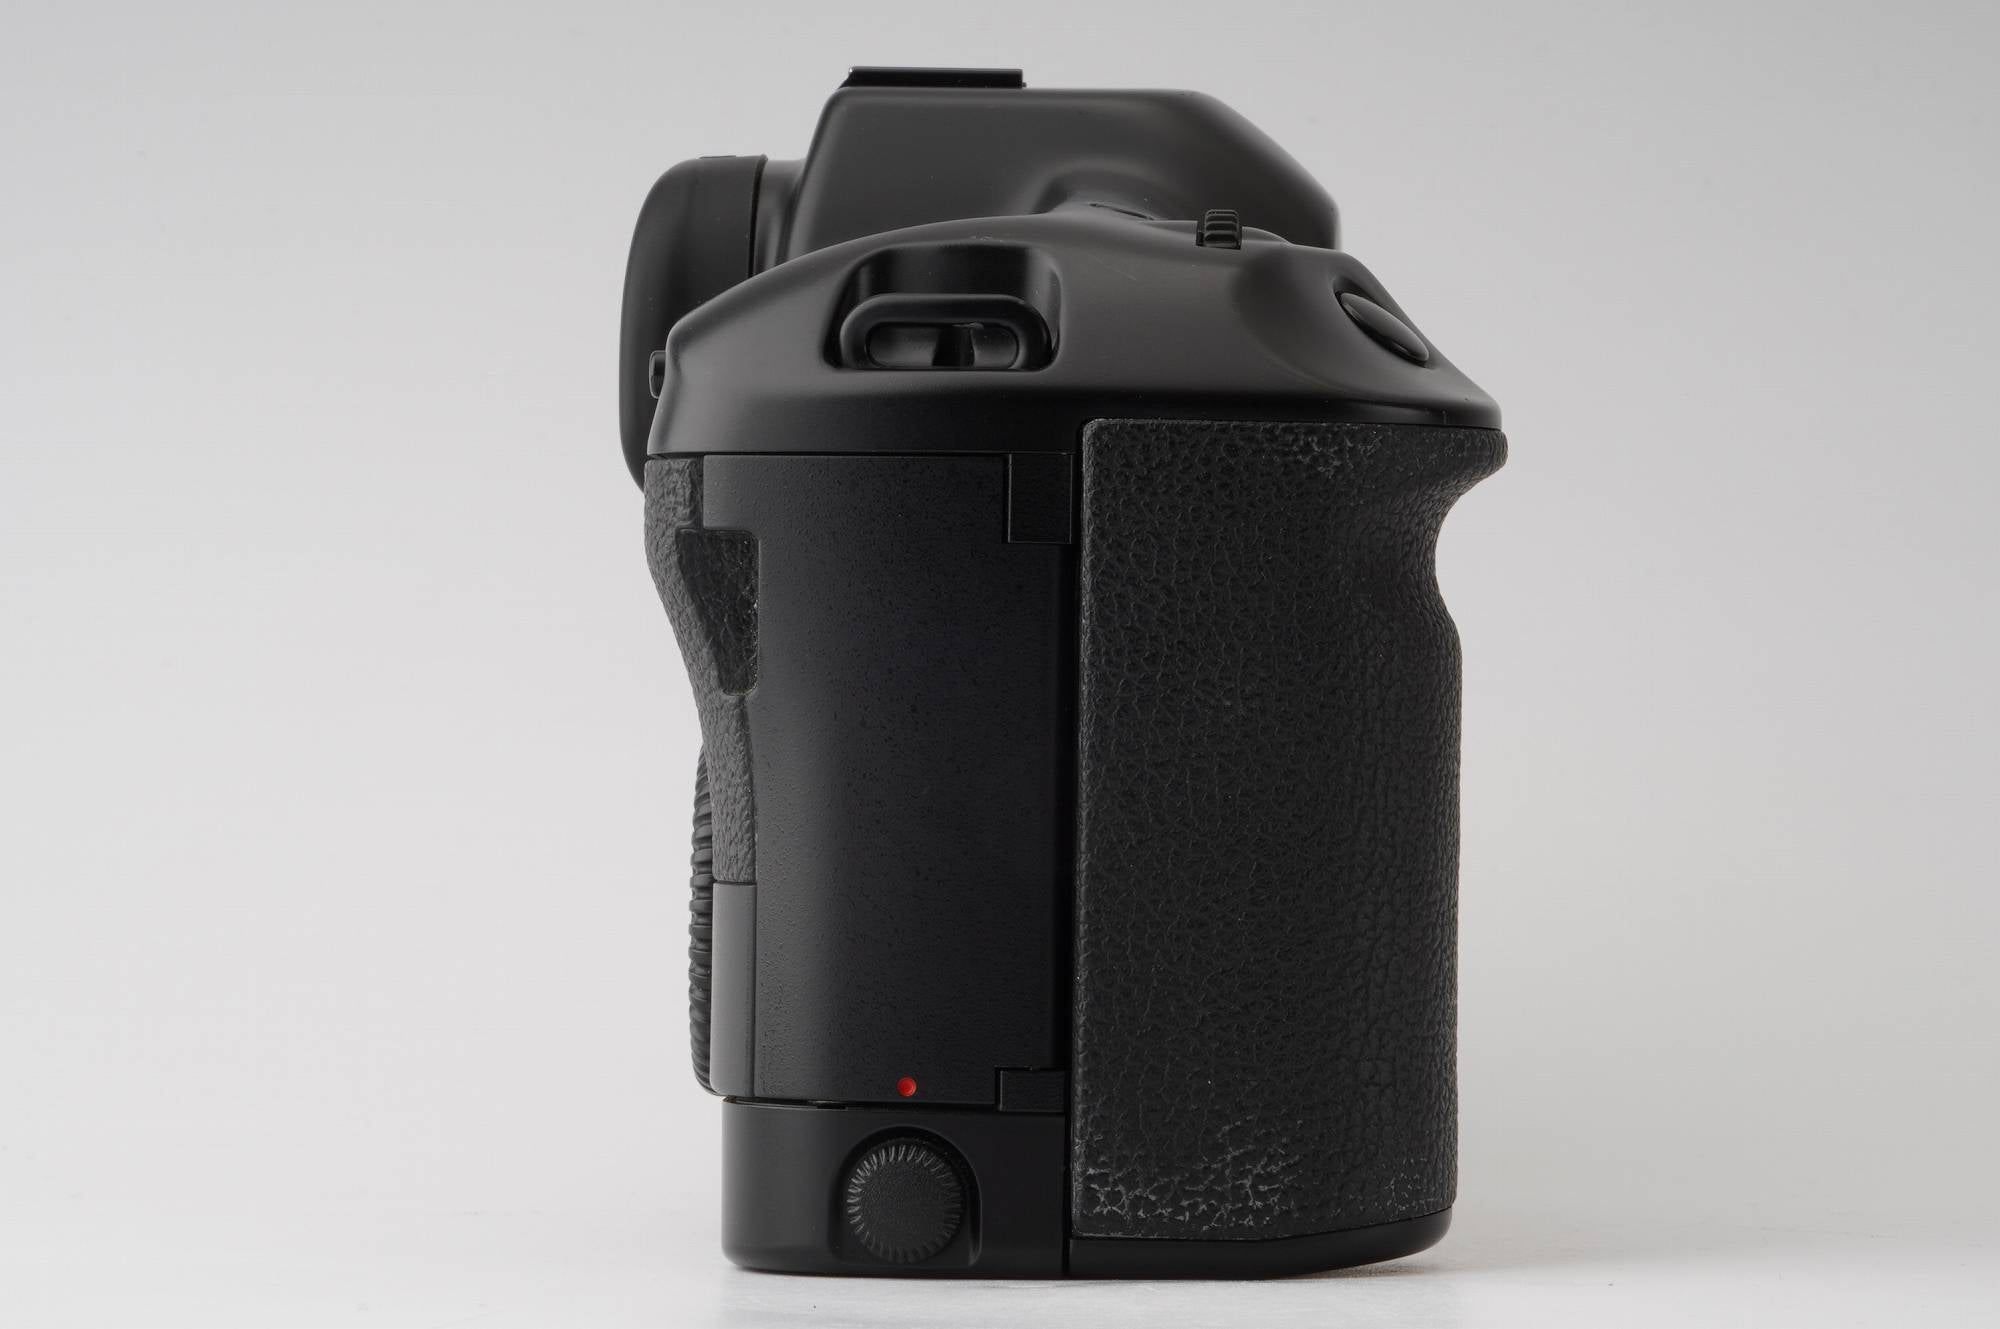 キヤノン Canon EOS-1 一眼レフフィルムカメラ – Natural Camera 